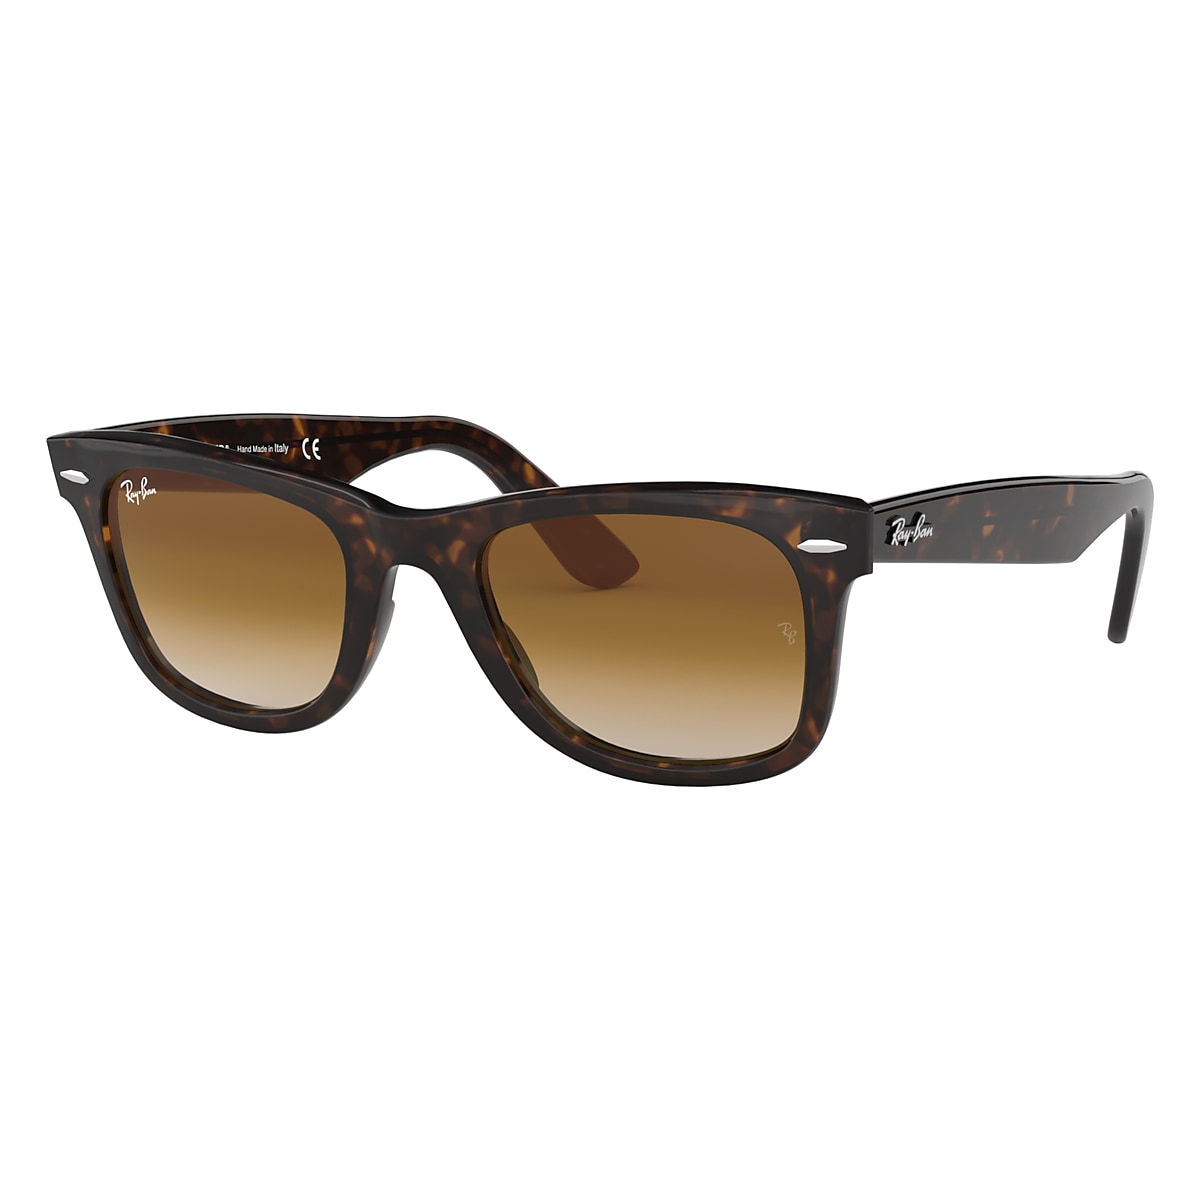 ORIGINAL WAYFARER CLASSIC Sunglasses in Tortoise and Brown 